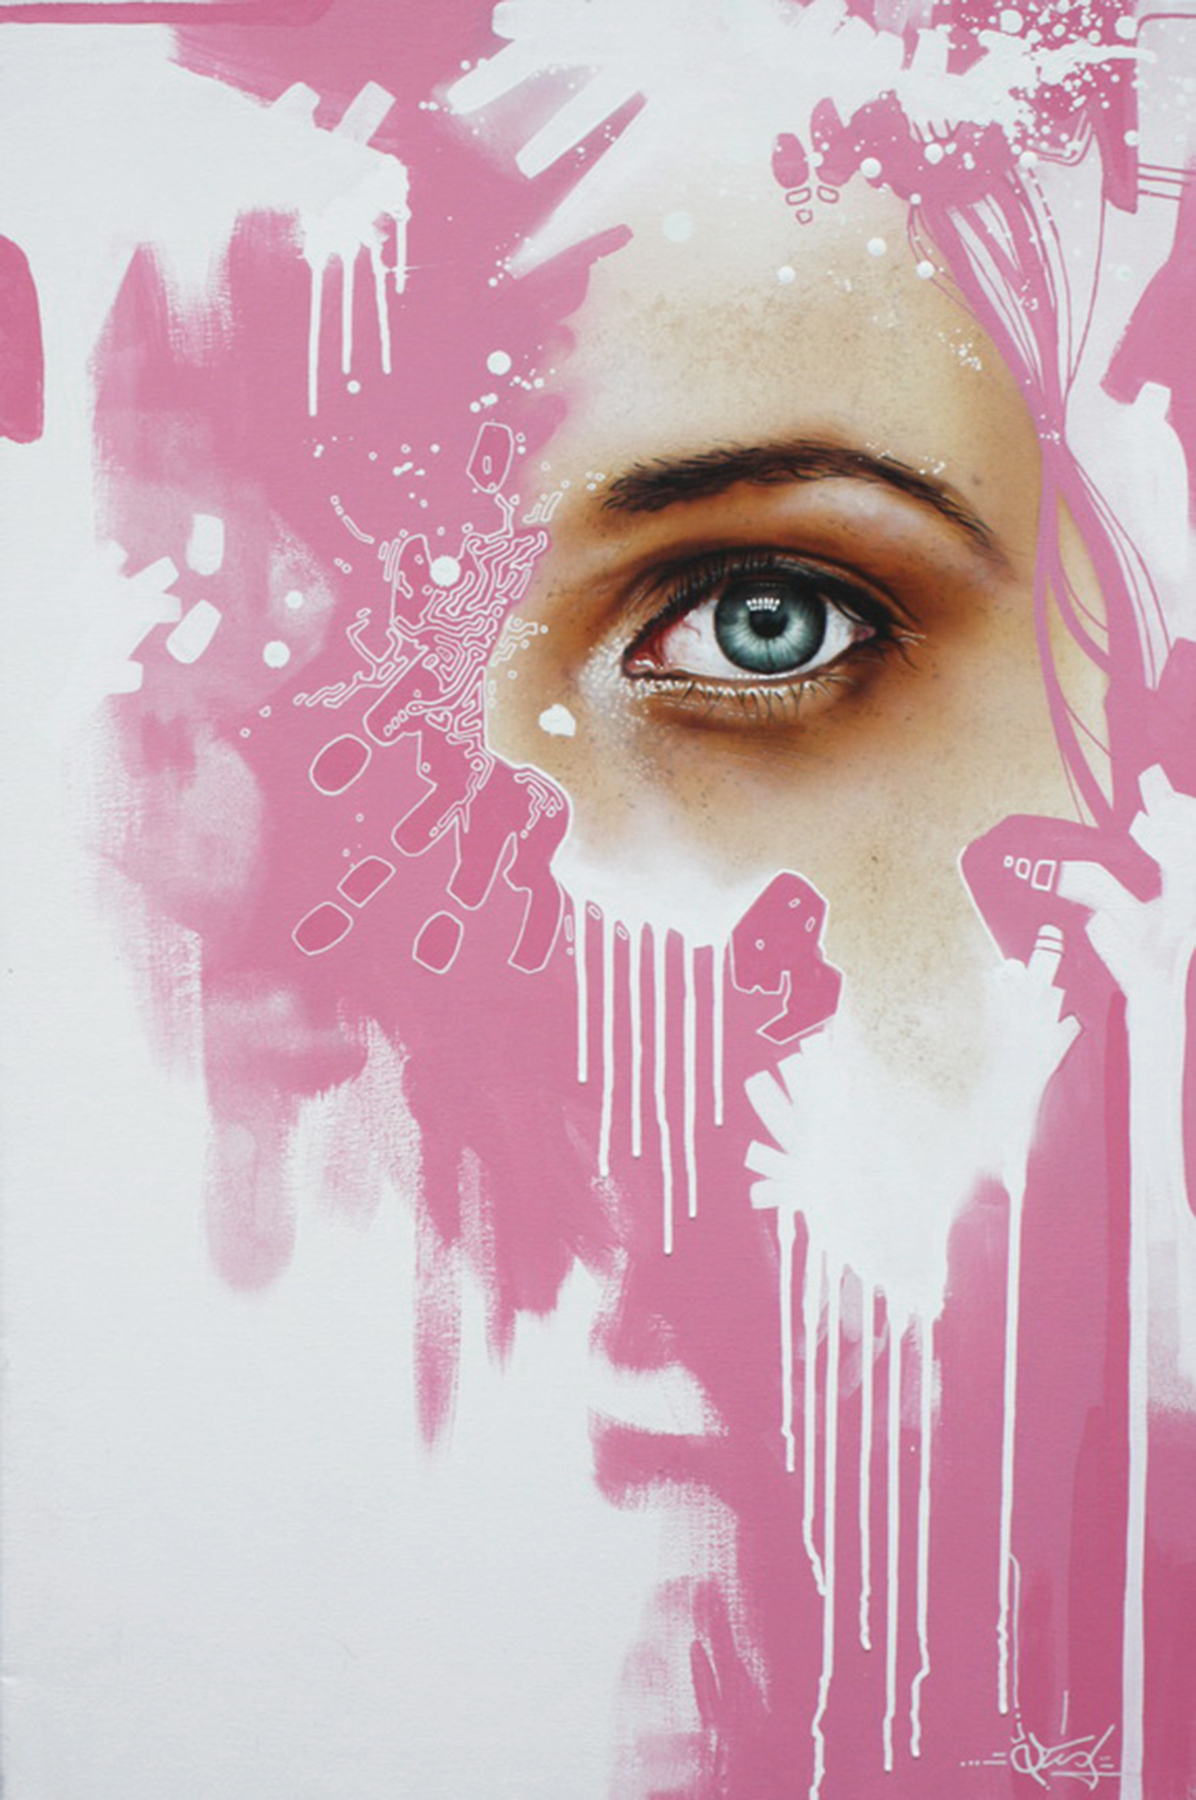 'Pink' (c) Luke McMullan, 2014